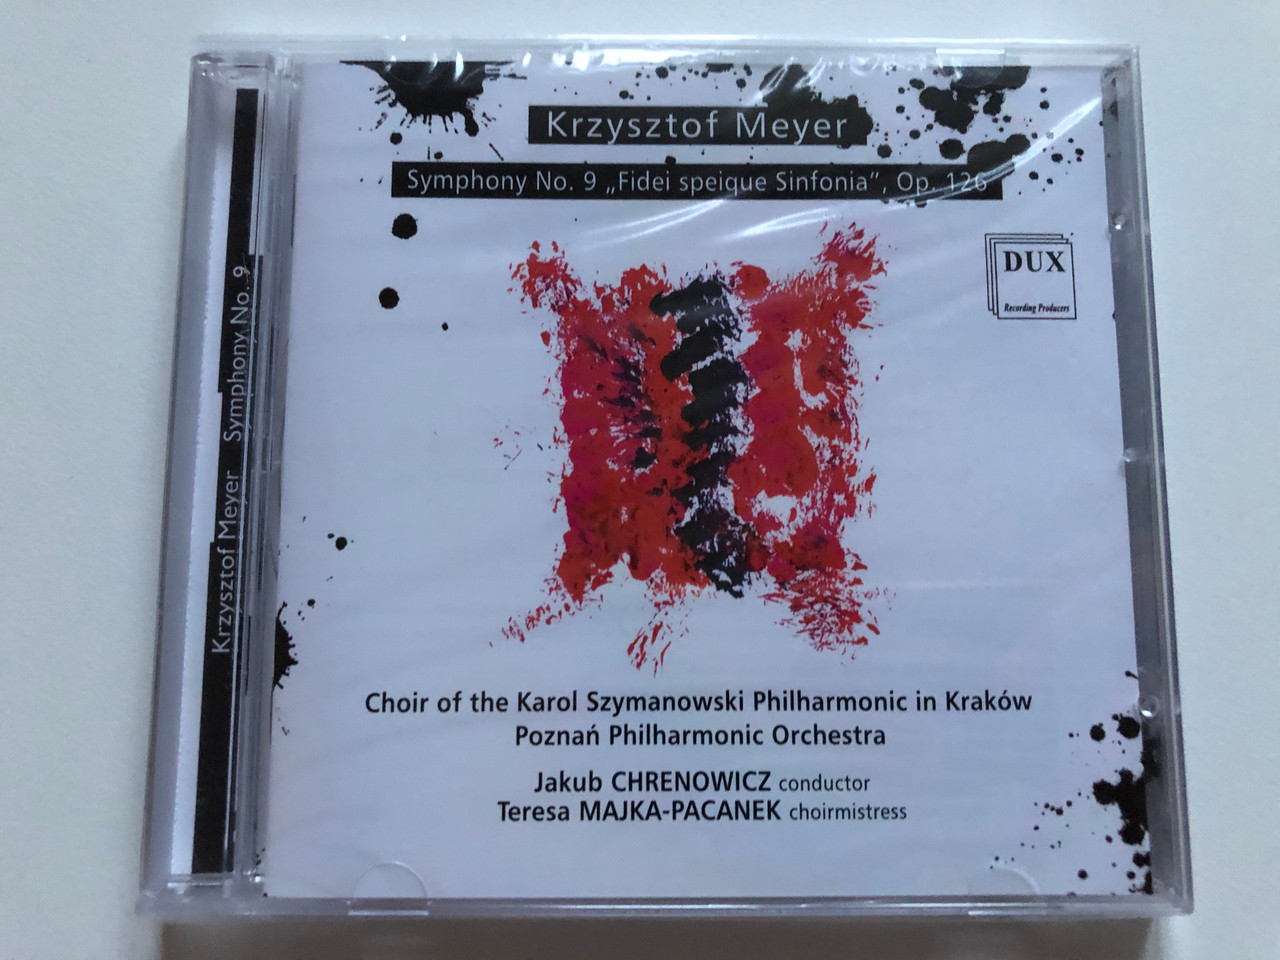 https://cdn10.bigcommerce.com/s-62bdpkt7pb/products/0/images/252759/Krzysztof_Meyer_-_Symphony_No._9_Fidei_speique_Sinfonia_Op._126_Choir_of_the_Karol_Szymanowski_Philharmonic_in_Krakow_Poznan_Philharmonic_Orchestra_Jakub_Chrenowicz_conductor_DUX_1__06341.1661797705.1280.1280.JPG?c=2&_gl=1*11krqme*_ga*MjA2NTIxMjE2MC4xNTkwNTEyNTMy*_ga_WS2VZYPC6G*MTY2MTc4MjI5Ny41NDEuMS4xNjYxNzk3NjkzLjYwLjAuMA..